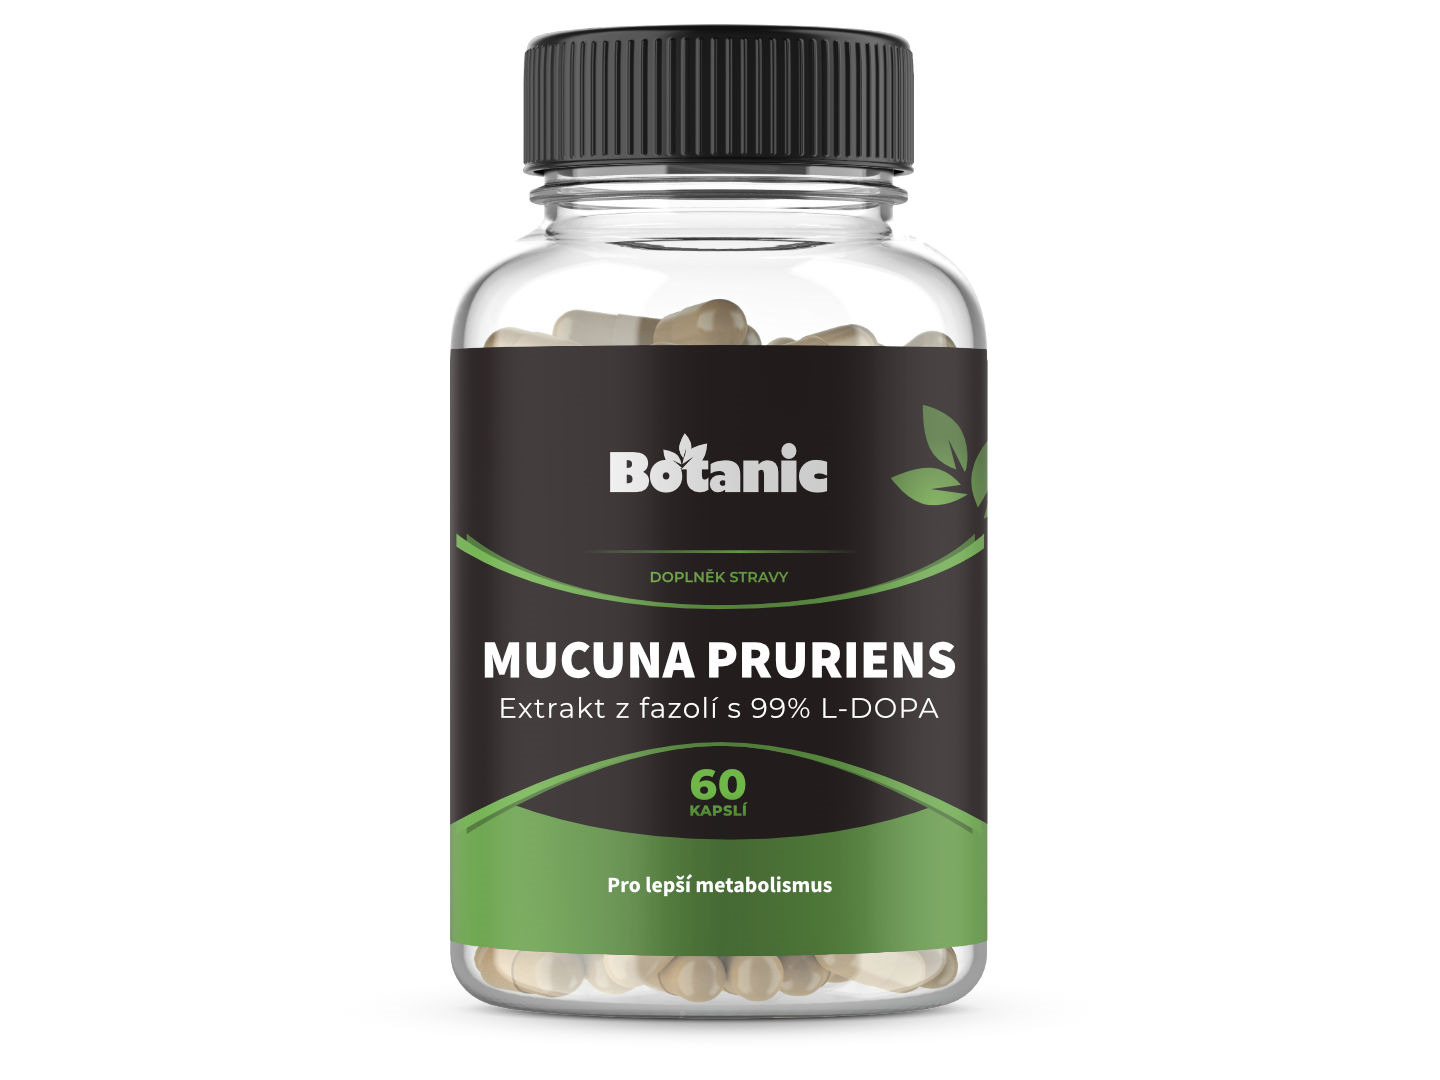 Botanic Mucuna pruriens - Extrakt z fazolí s 99% L-DOPA kapsle 60kap.